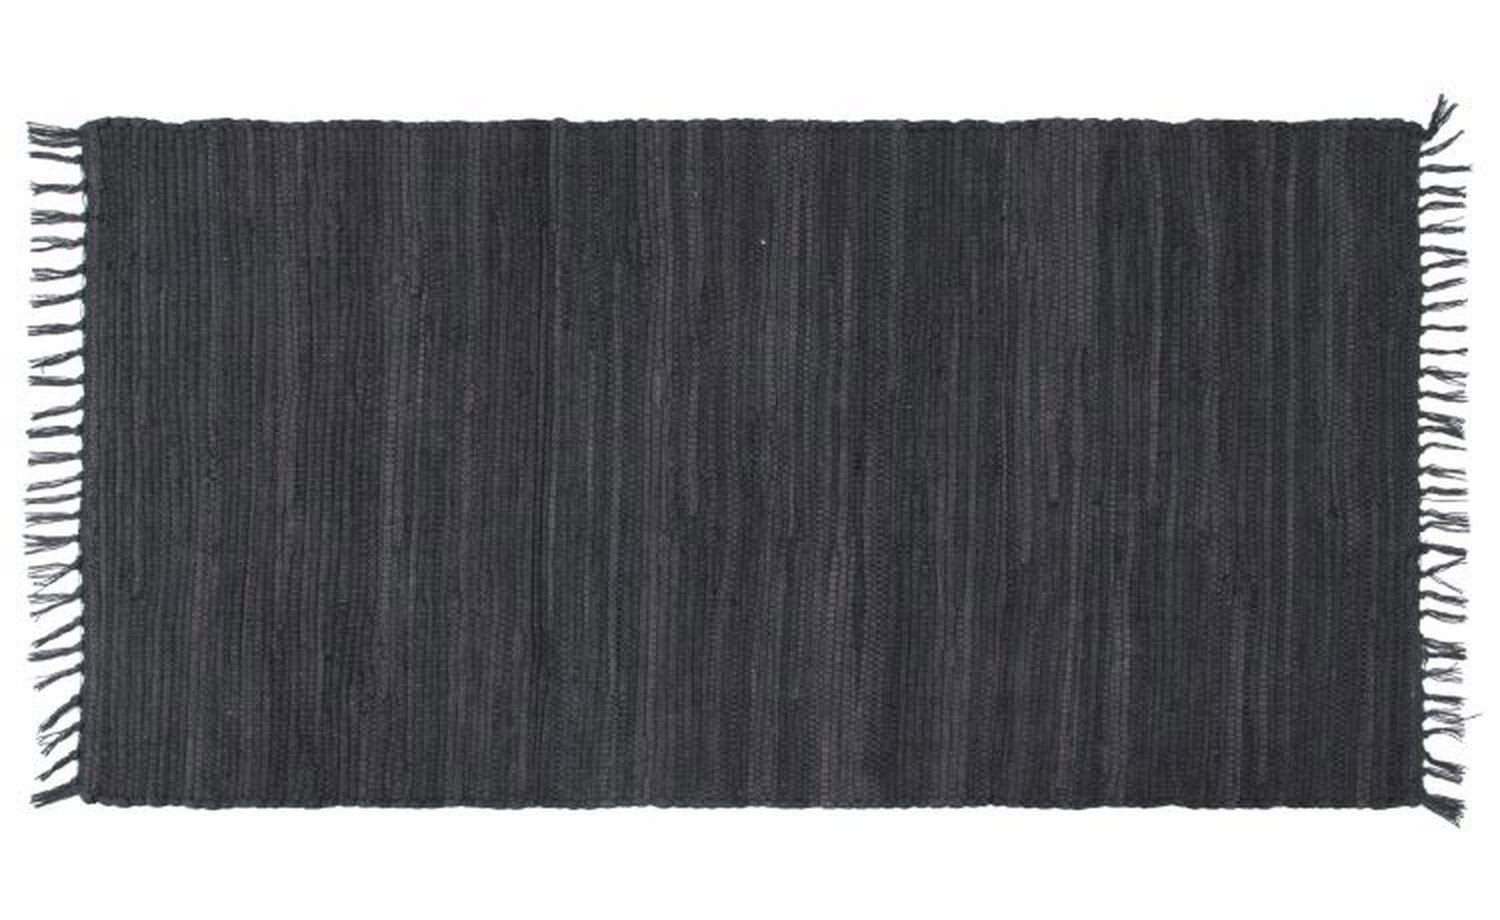 Abano tappeto cucina nero 100x60 cm